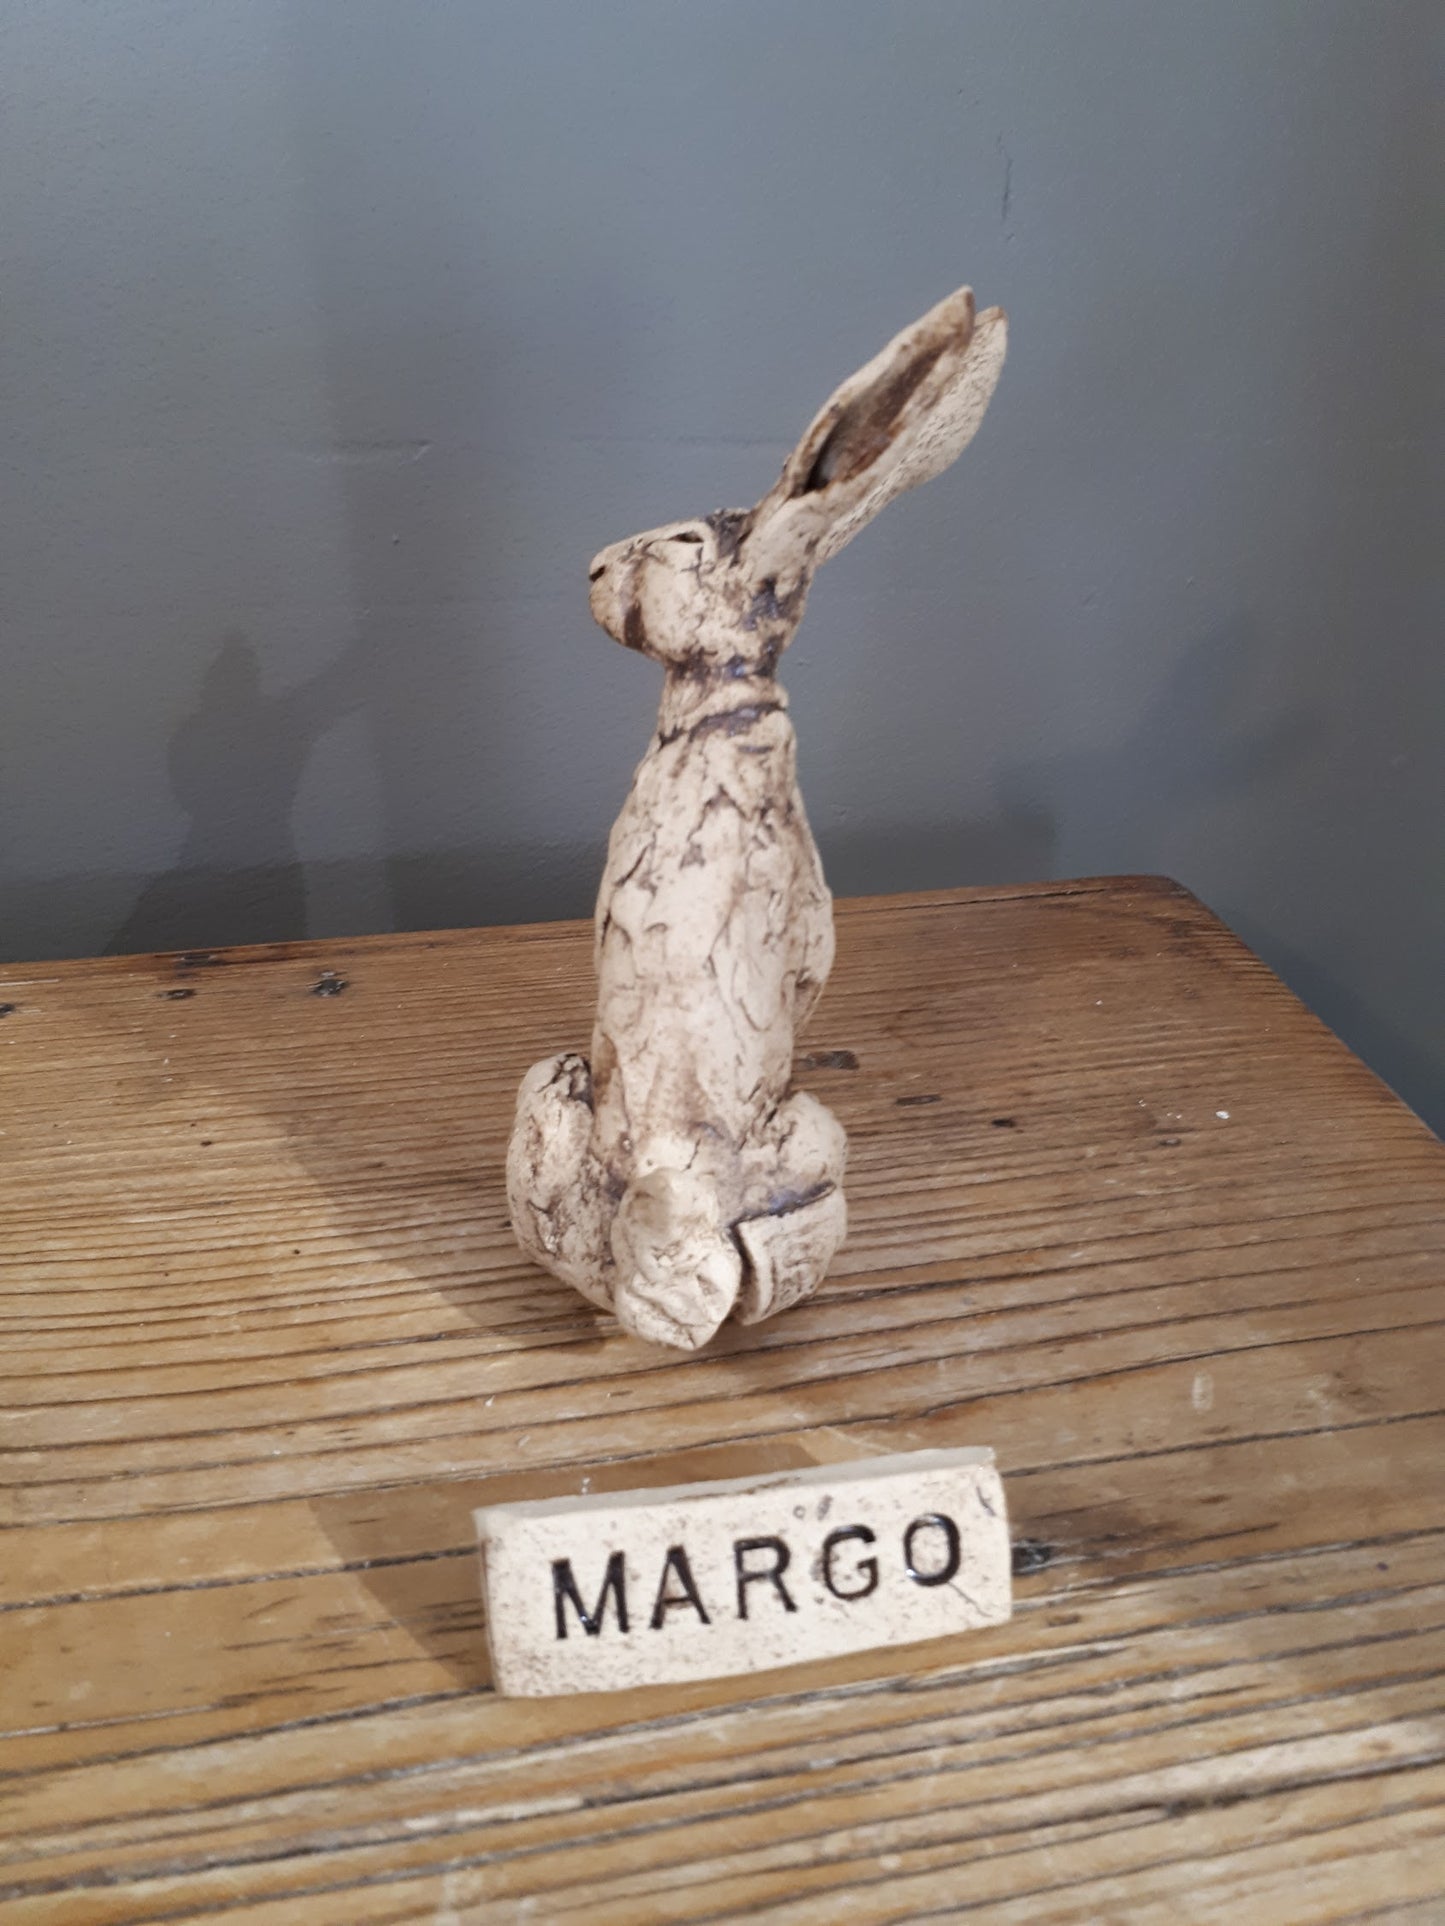 Sharon Westmoreland - Margo hare